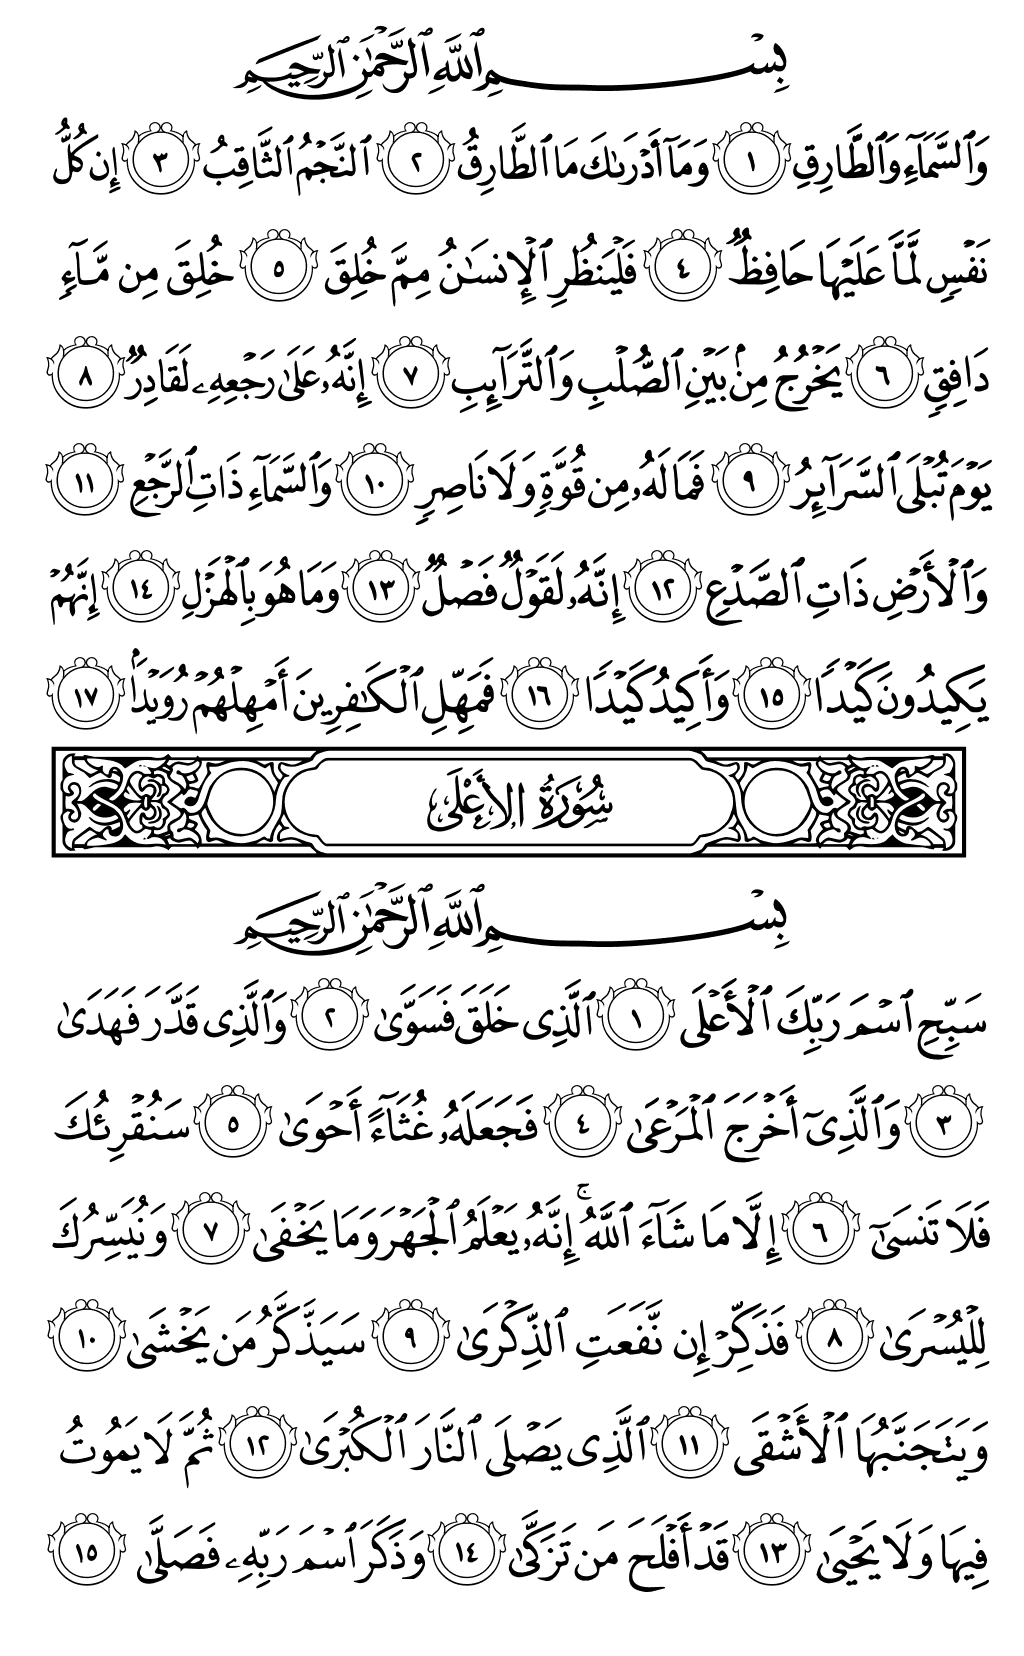 الصفحة رقم 591 من القرآن الكريم